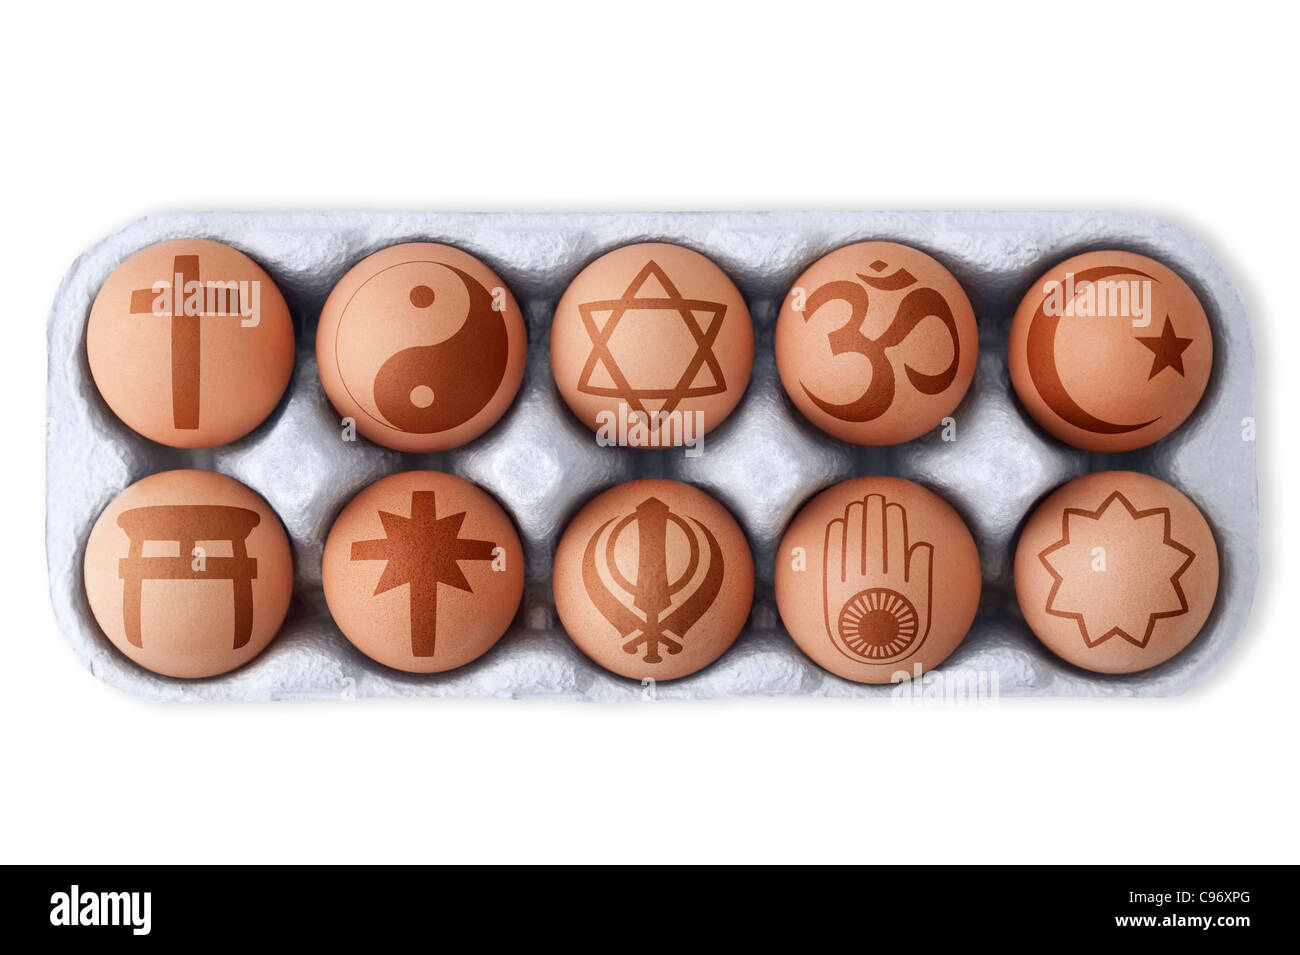 Feld von Eiern mit verschiedenen Symbolen von globalen religiösen Doktrinen gedruckt auf jeden einzelnen.  Weißer Hintergrund, Ausschnitt Stockfoto